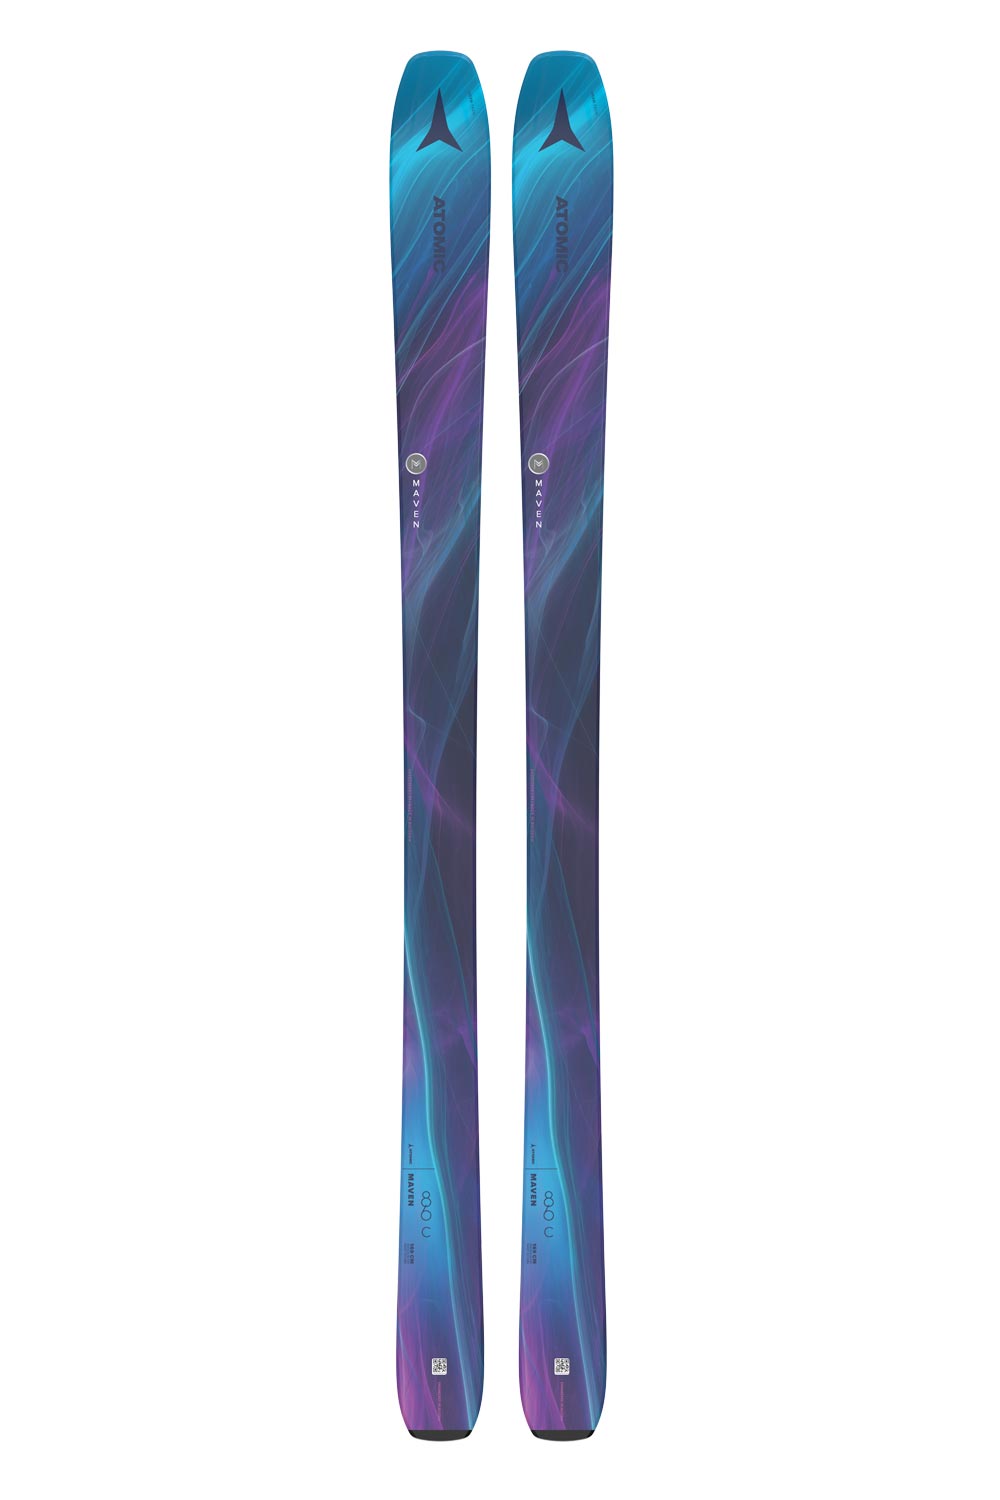 women's Atomic Maven skis, blue and purple swirl pattern